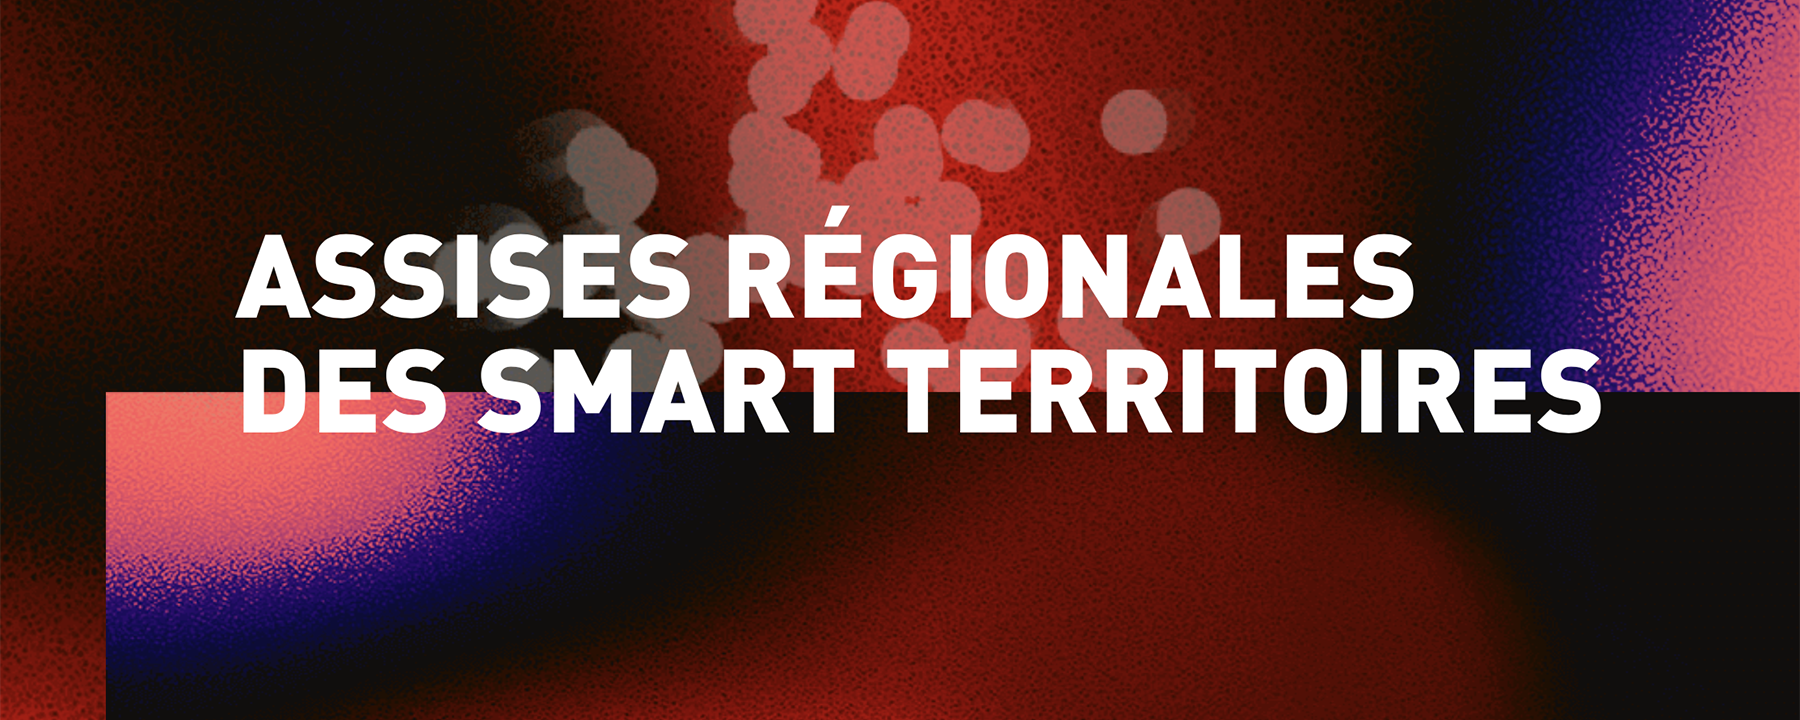 Assises régionales des smart territoires 